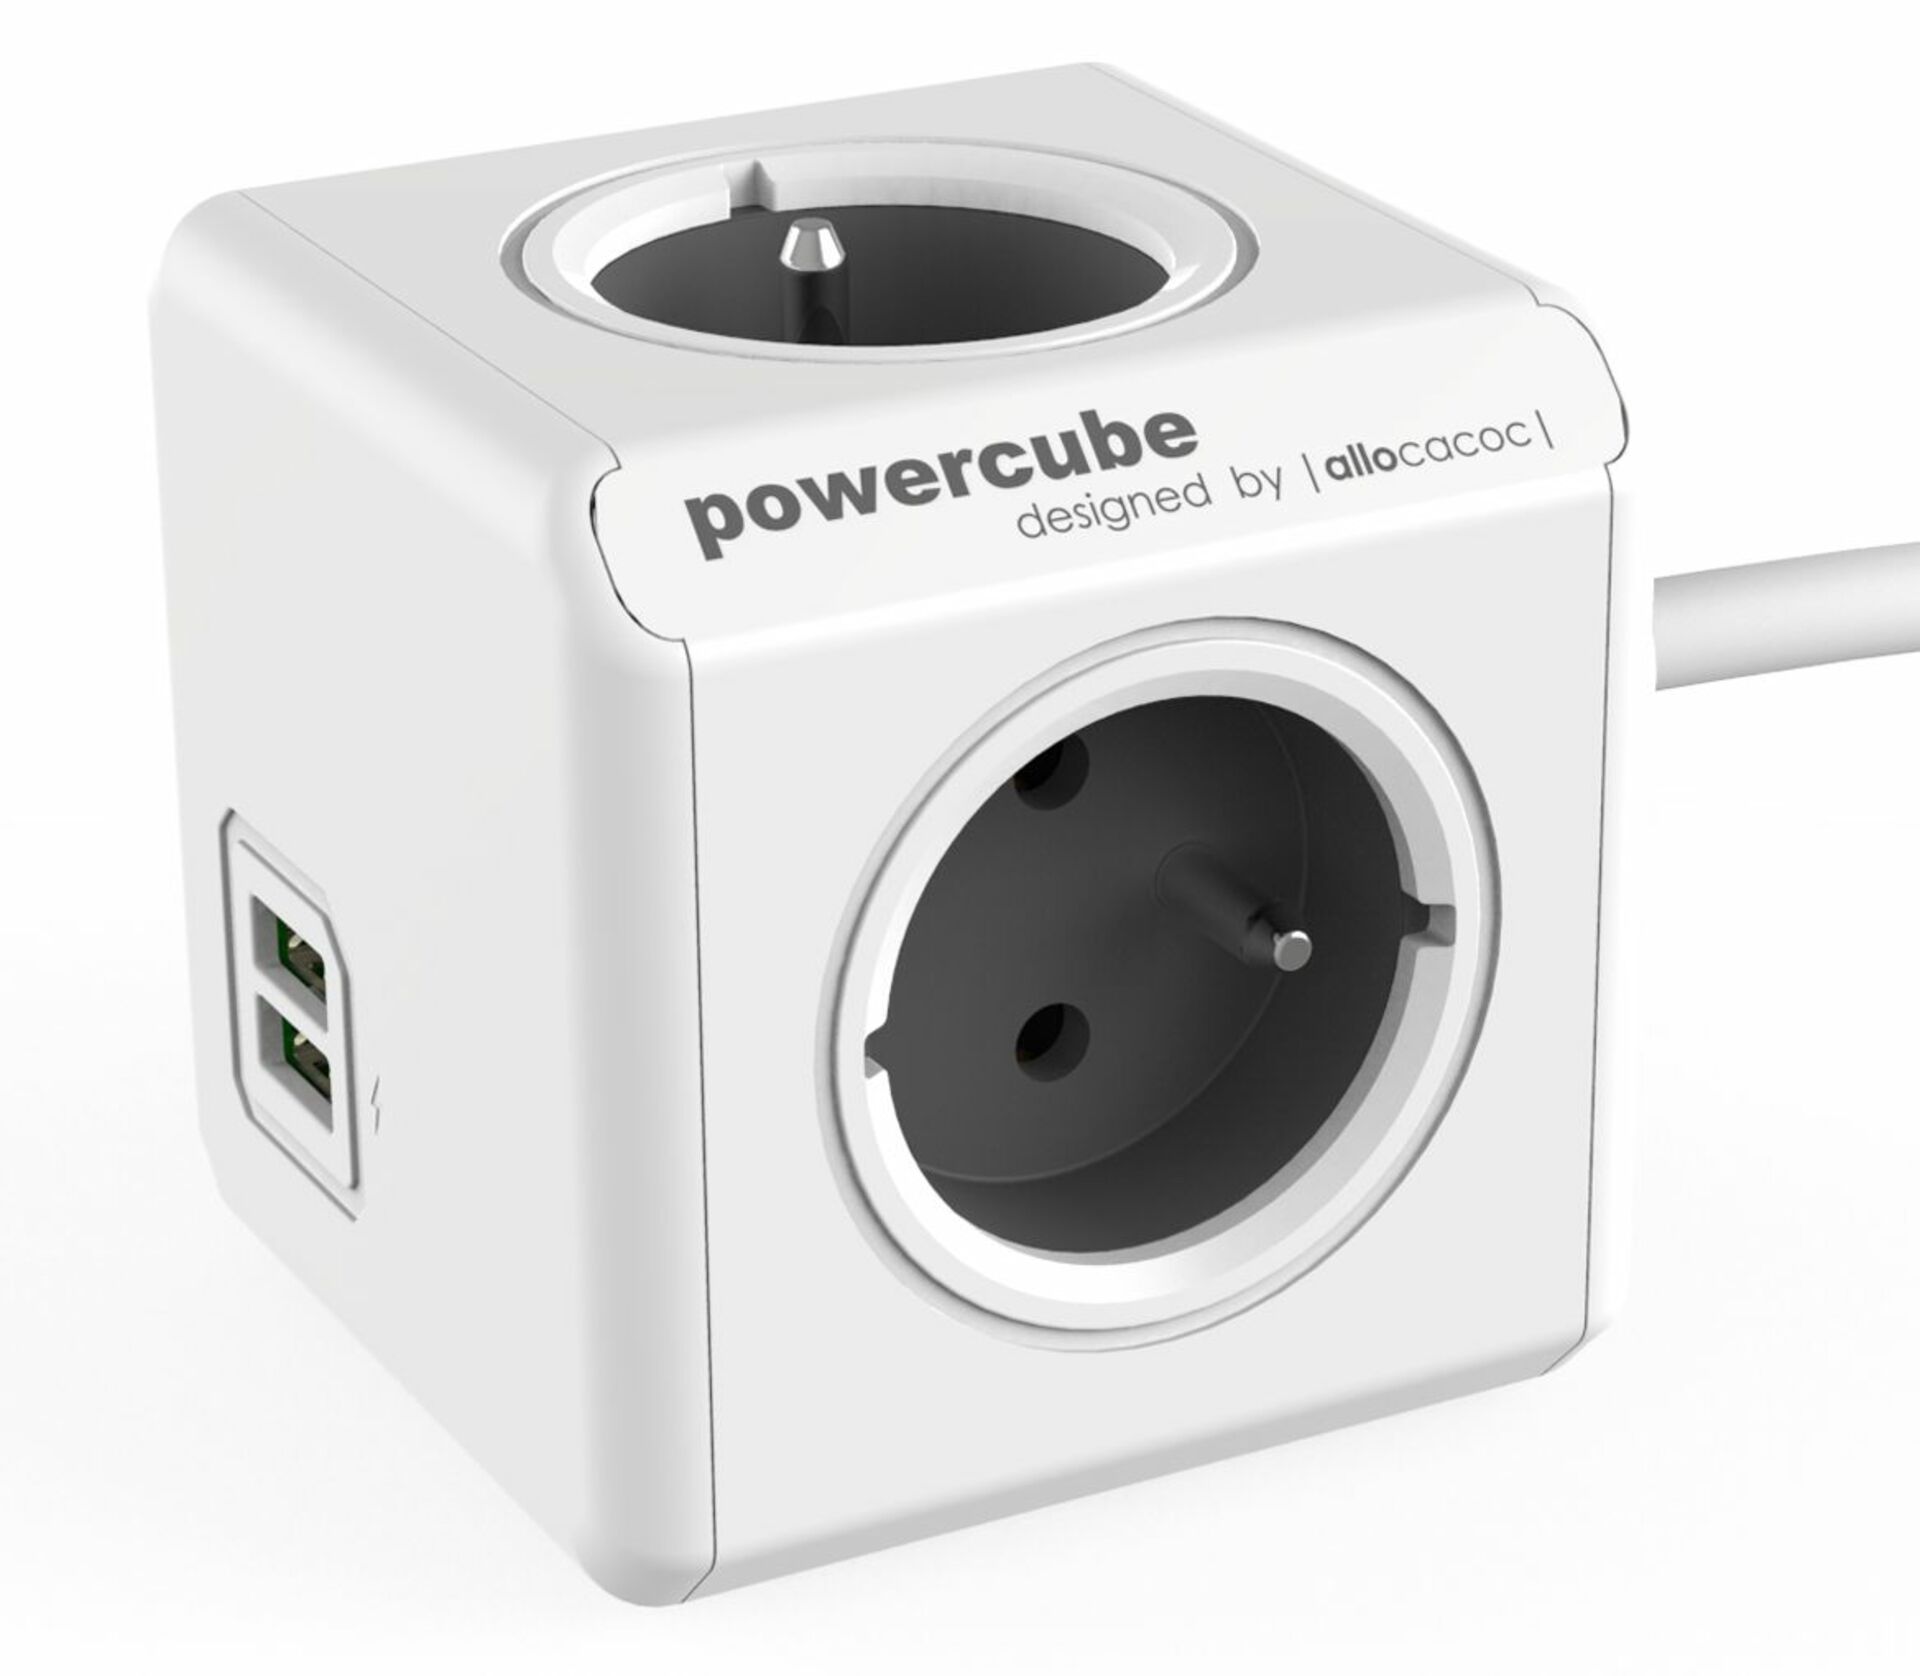 PowerCube Extended USB,šedá